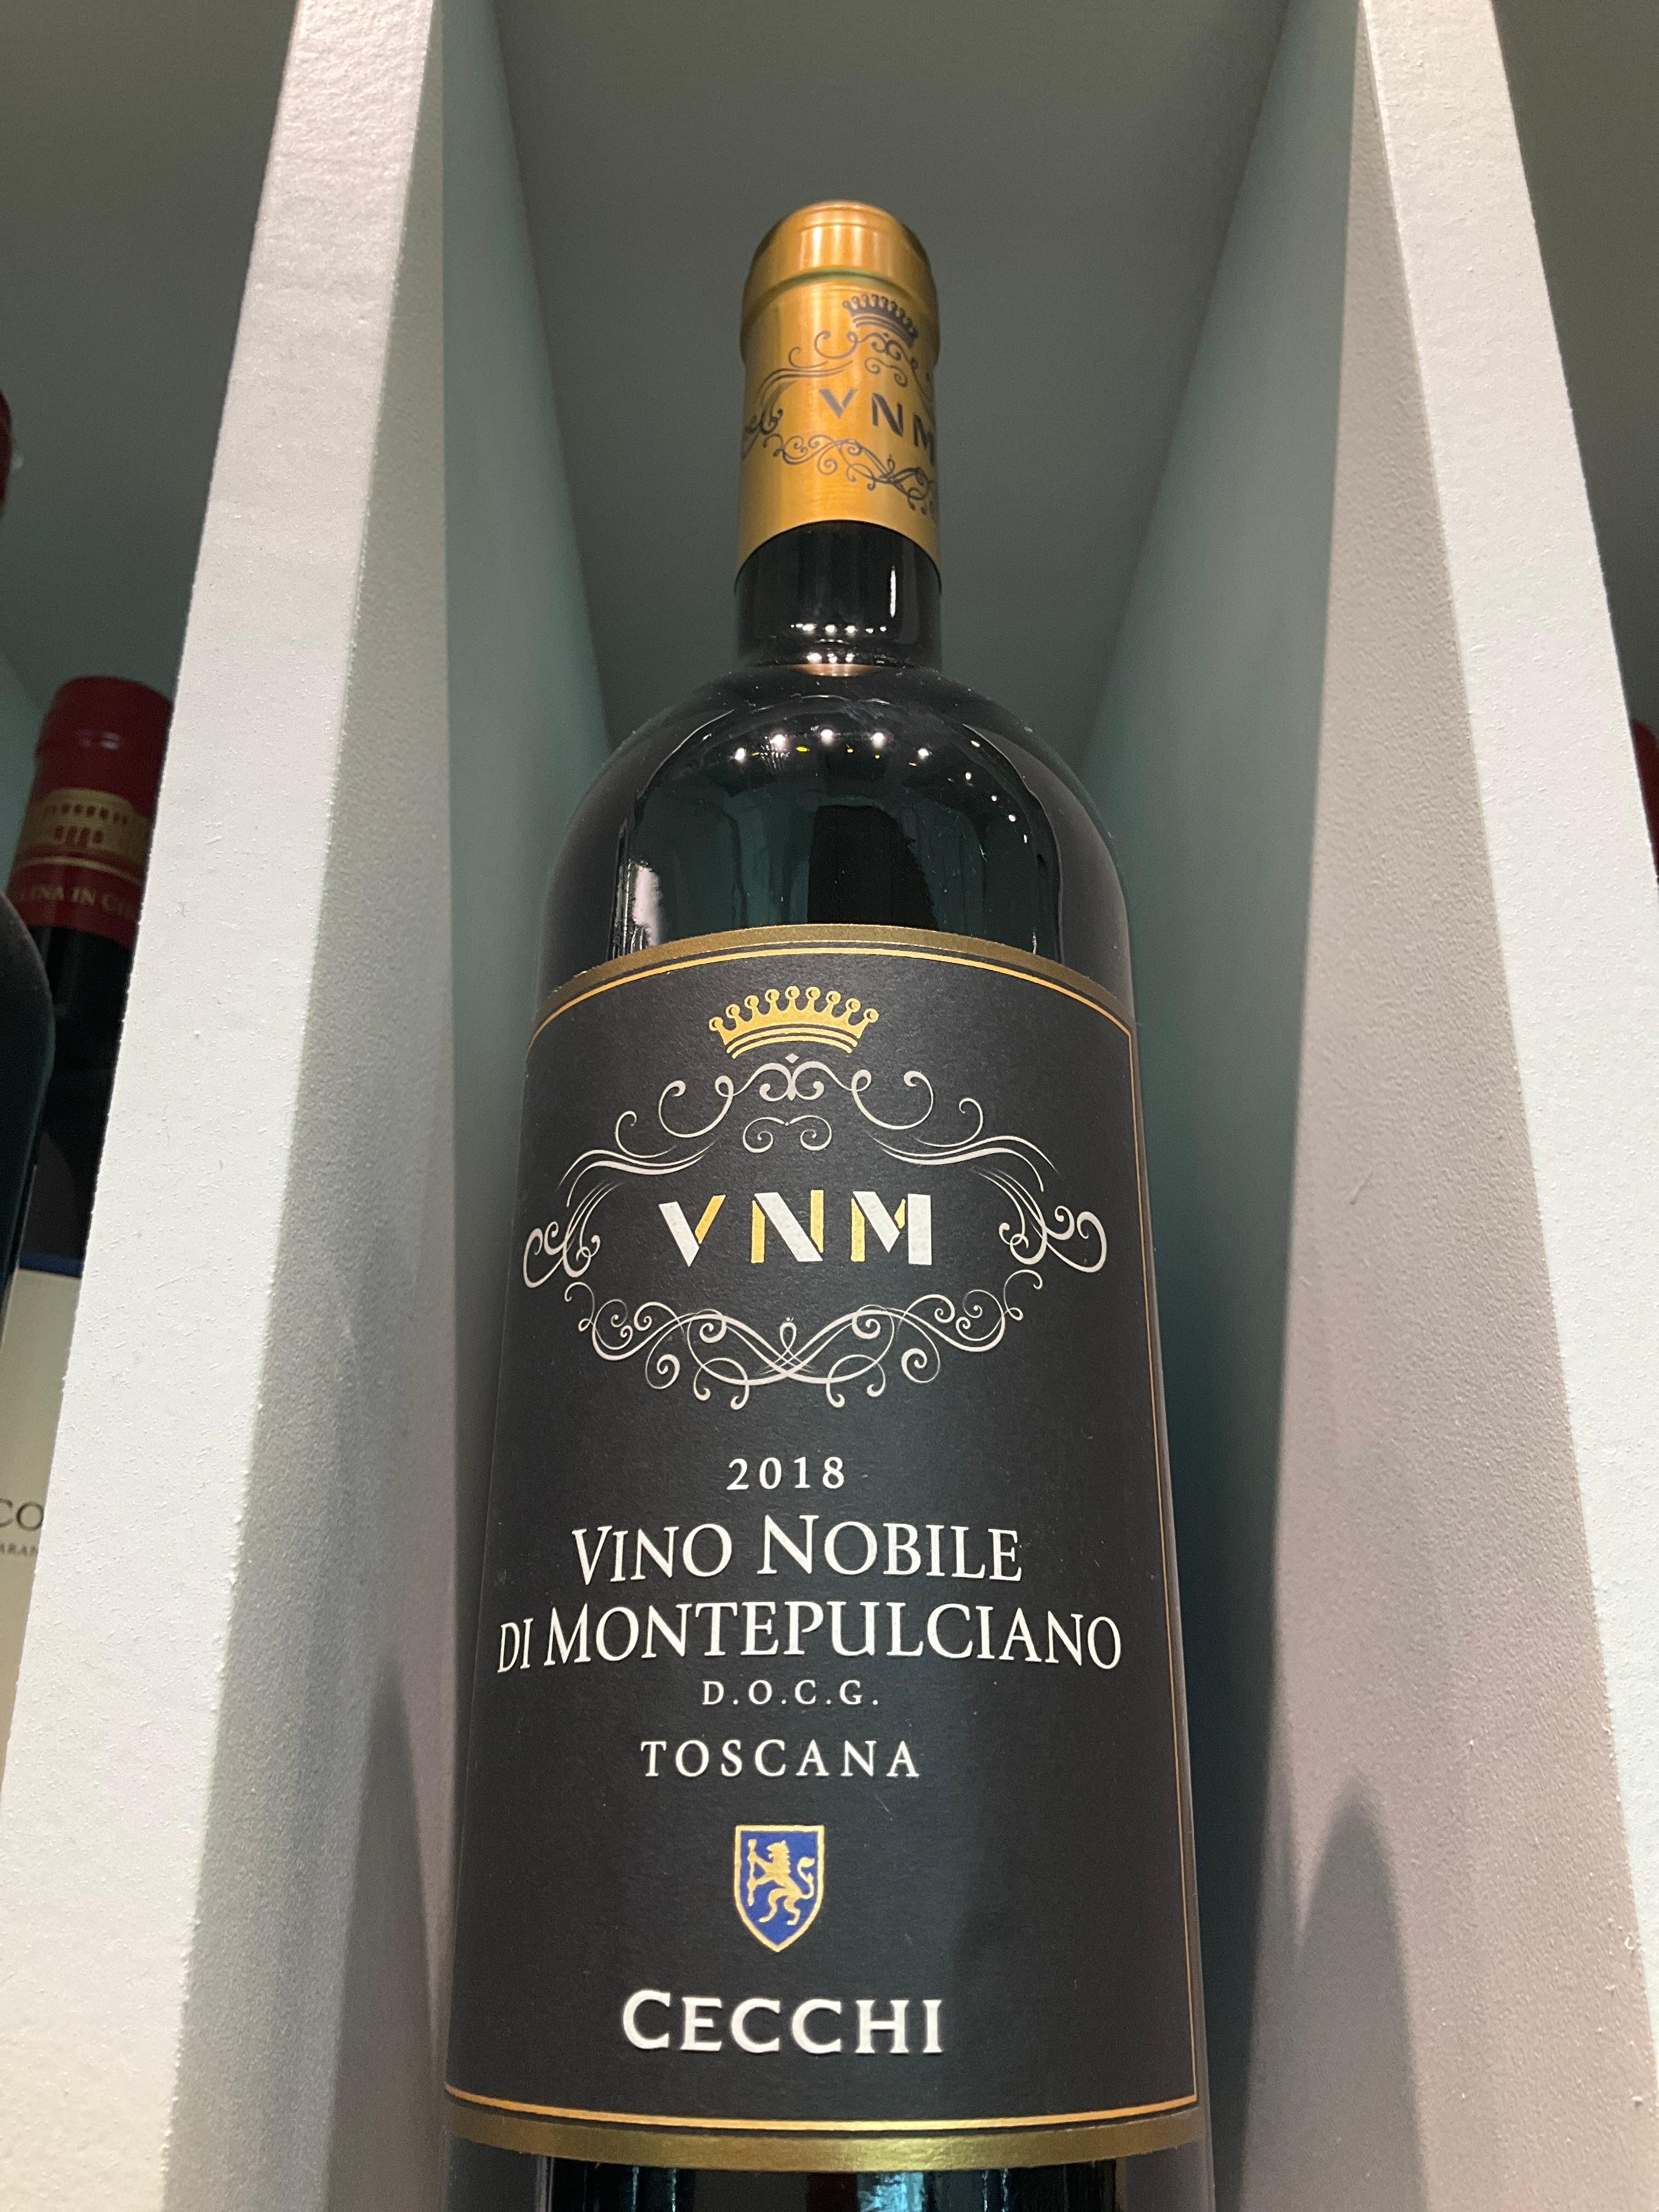 Cecchi Vino Nobile di Montepulciano 2018 - 750ml